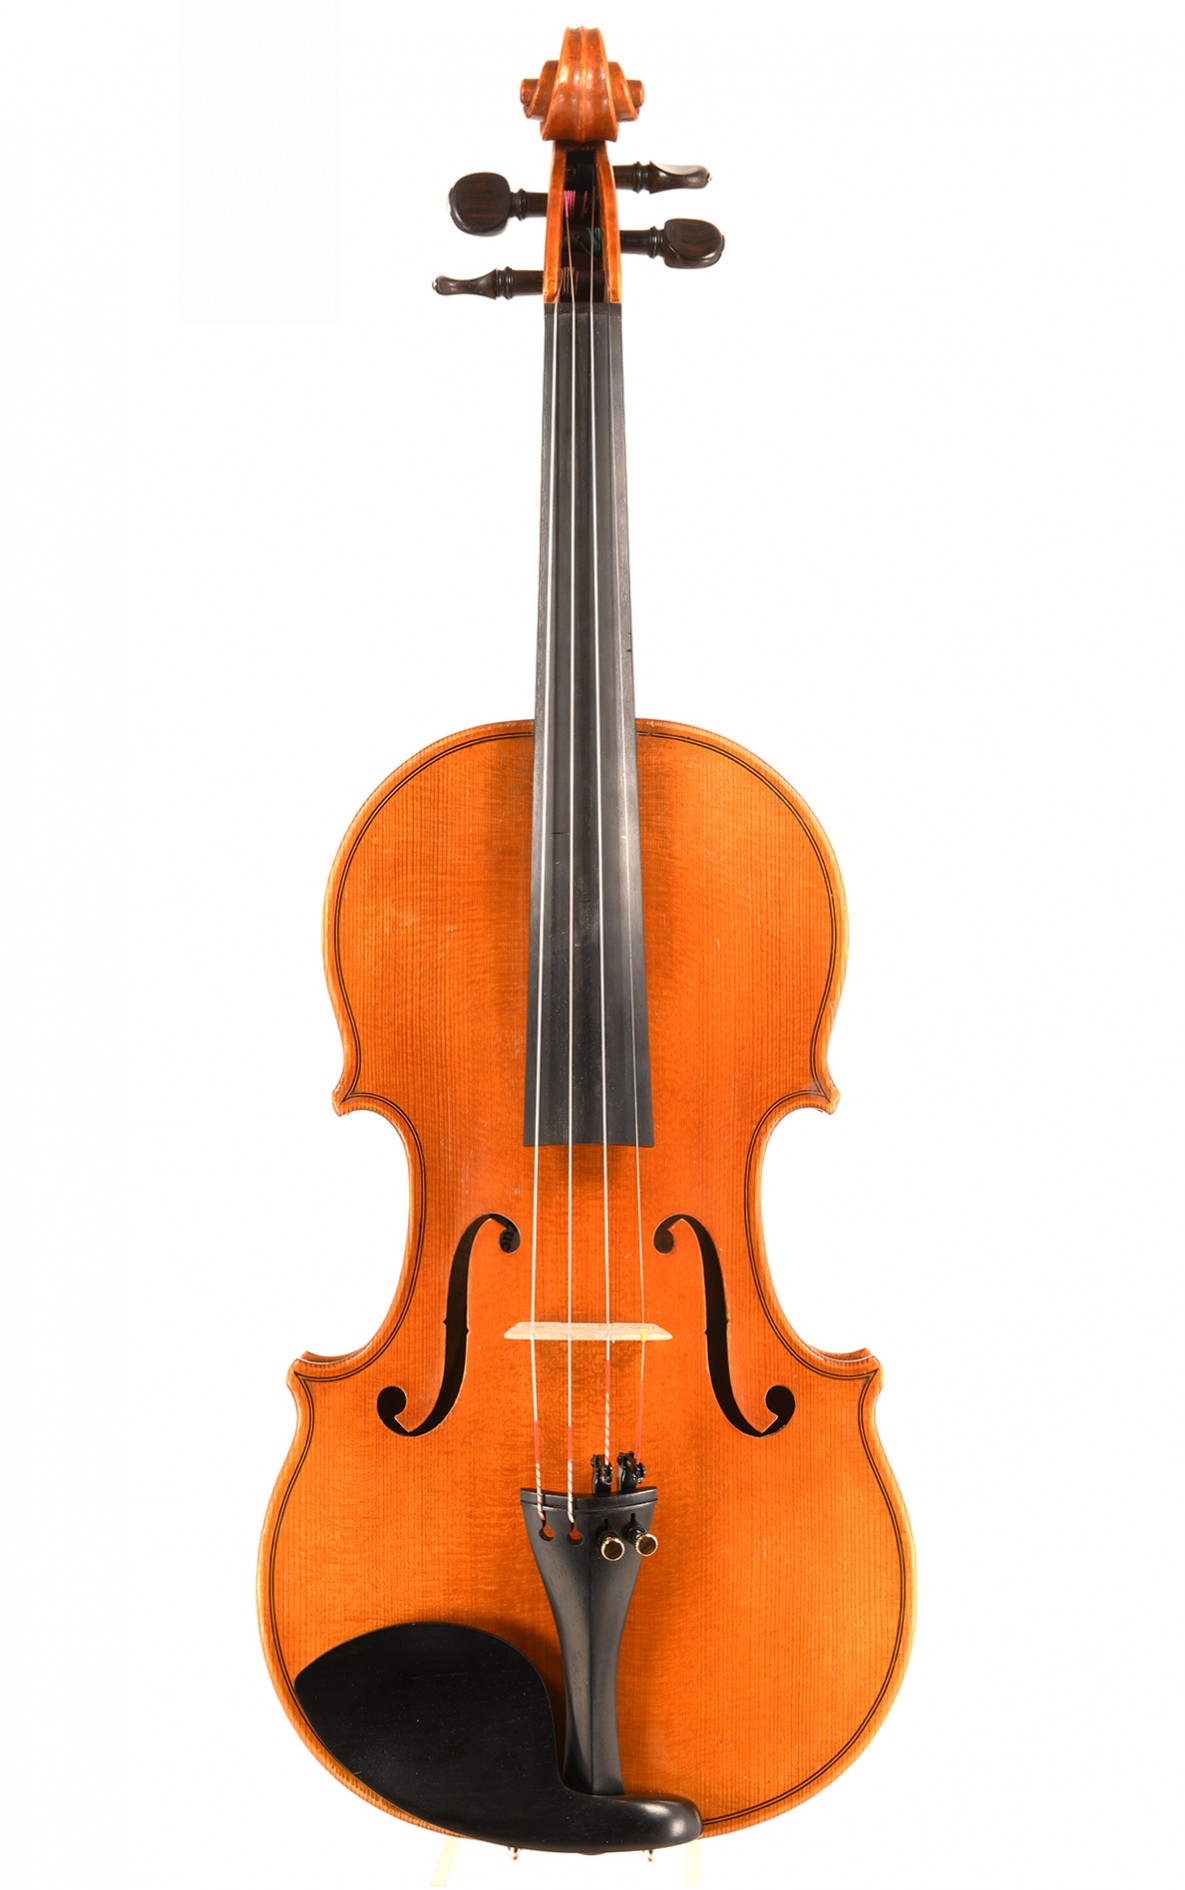 Karl Mächler, violon suisse de Zurich construit en 1938